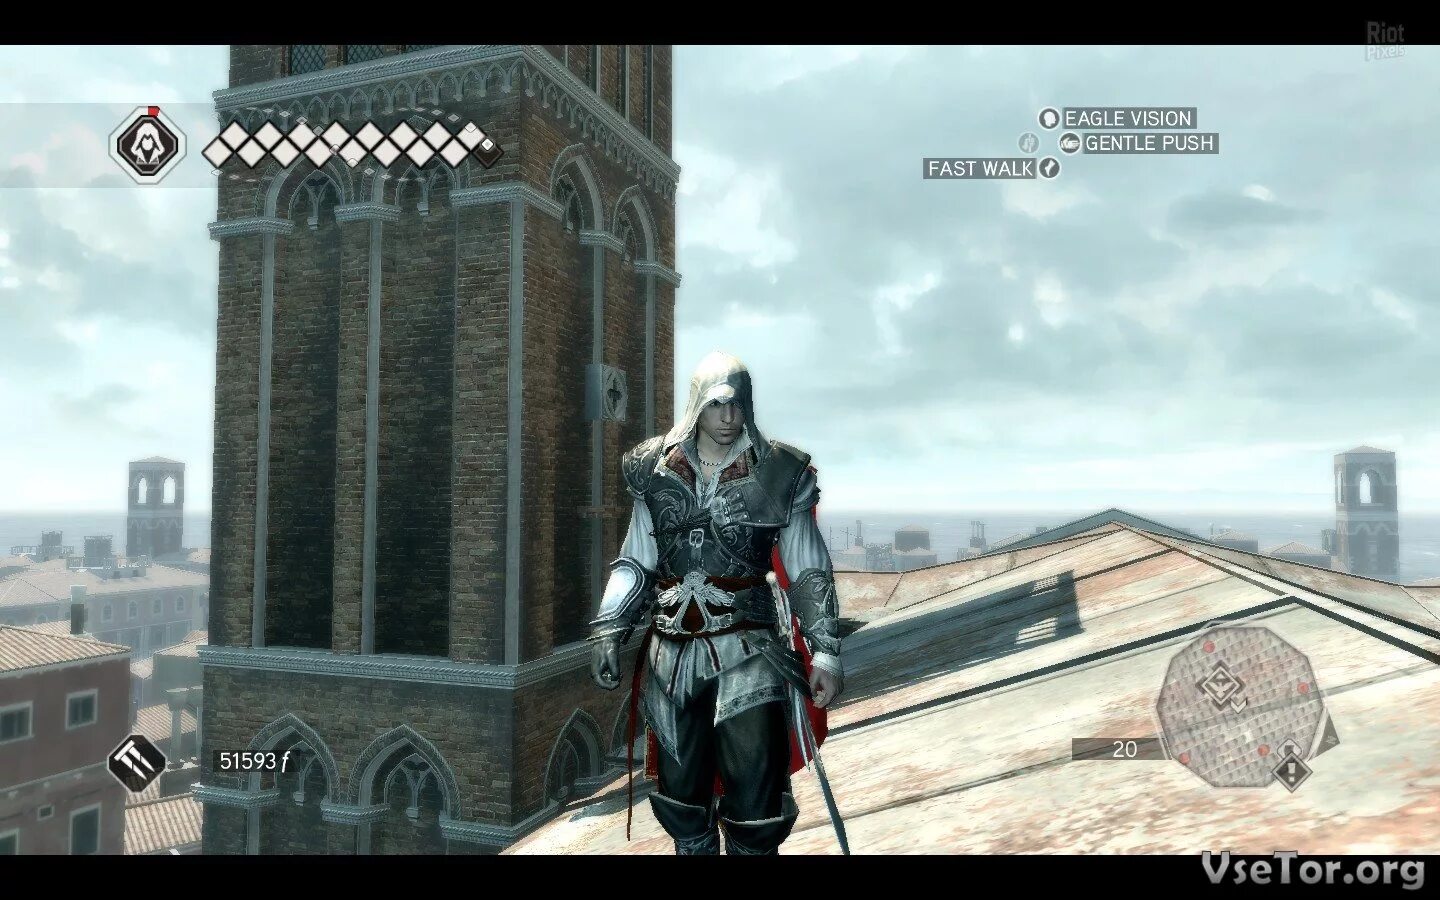 Скриншот управления ассасин Крид 2. Открытый мир в ассасин Крид 2. Дефолтное управление в Assassins Creed 2. Assassin's Creed 2 раскладка клавиатуры. Настройки ассасин крид 2